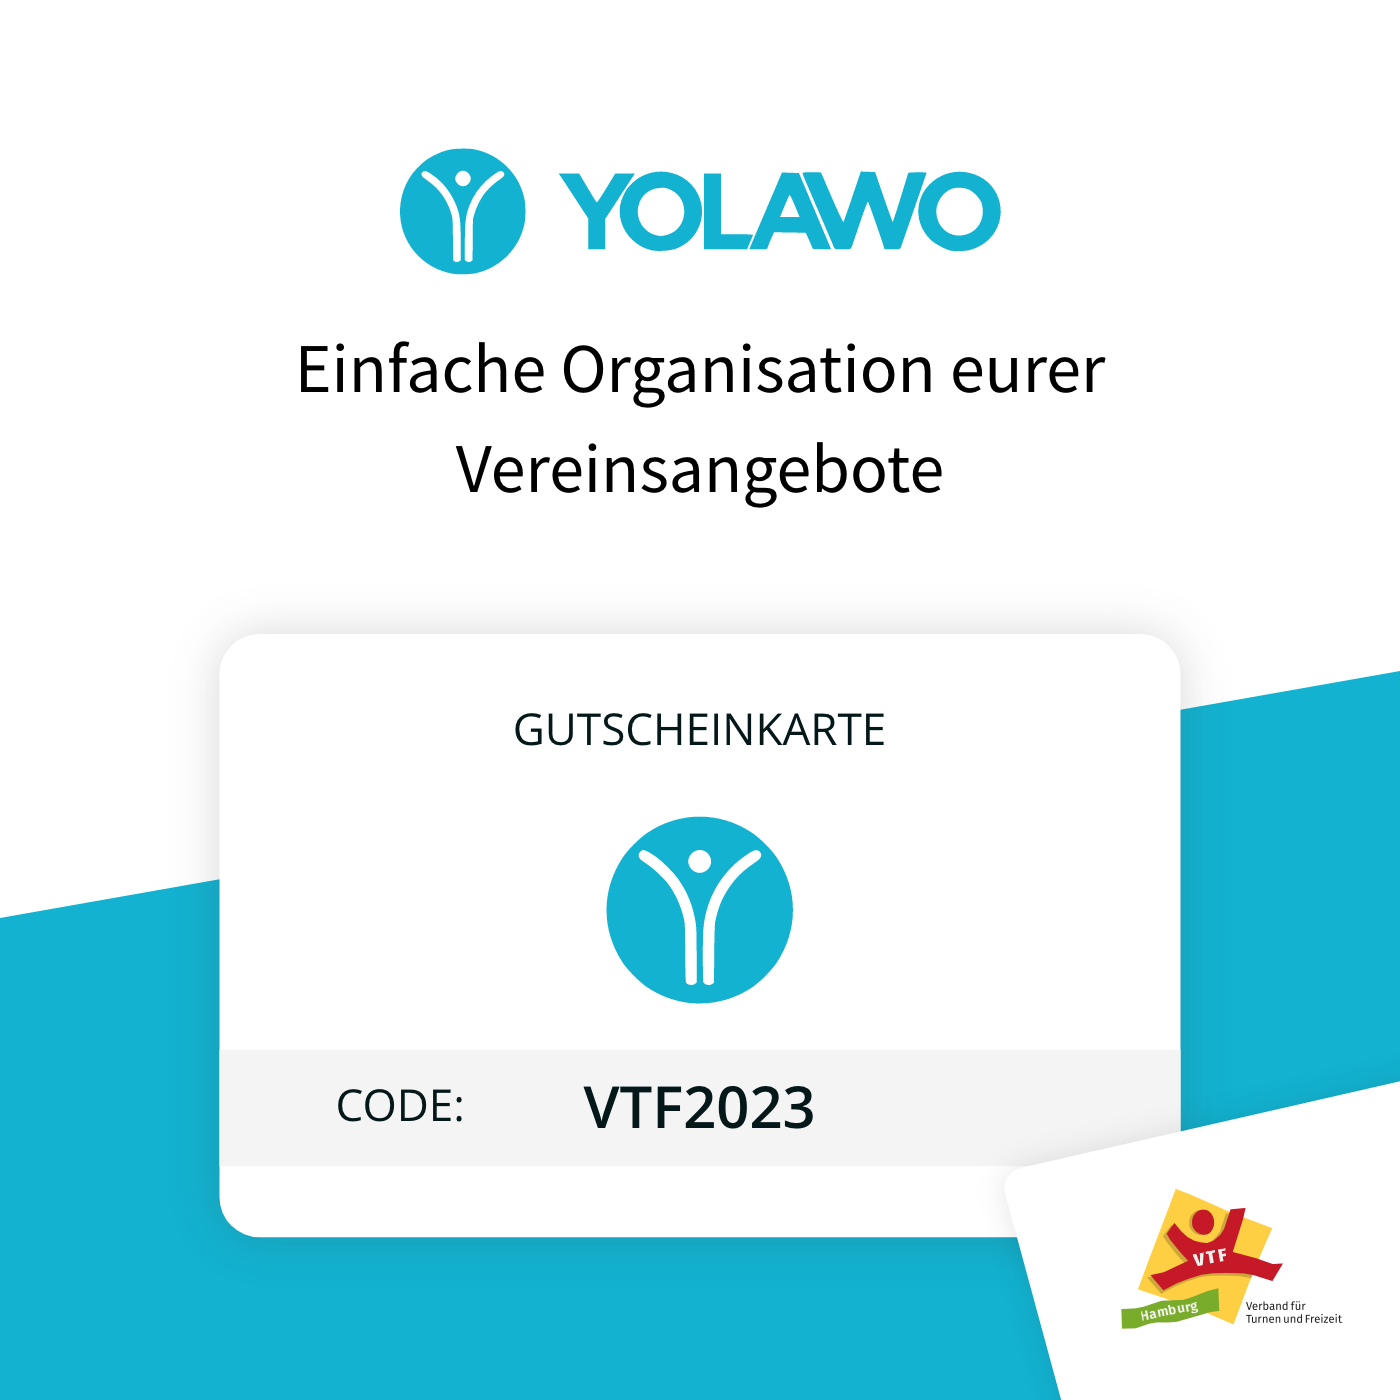 Yolawo gutscheinkarte - Einfach Organisation eurer Vereinsangebote für VTF.Mitgliedsvereine mit dem Code VTF2023